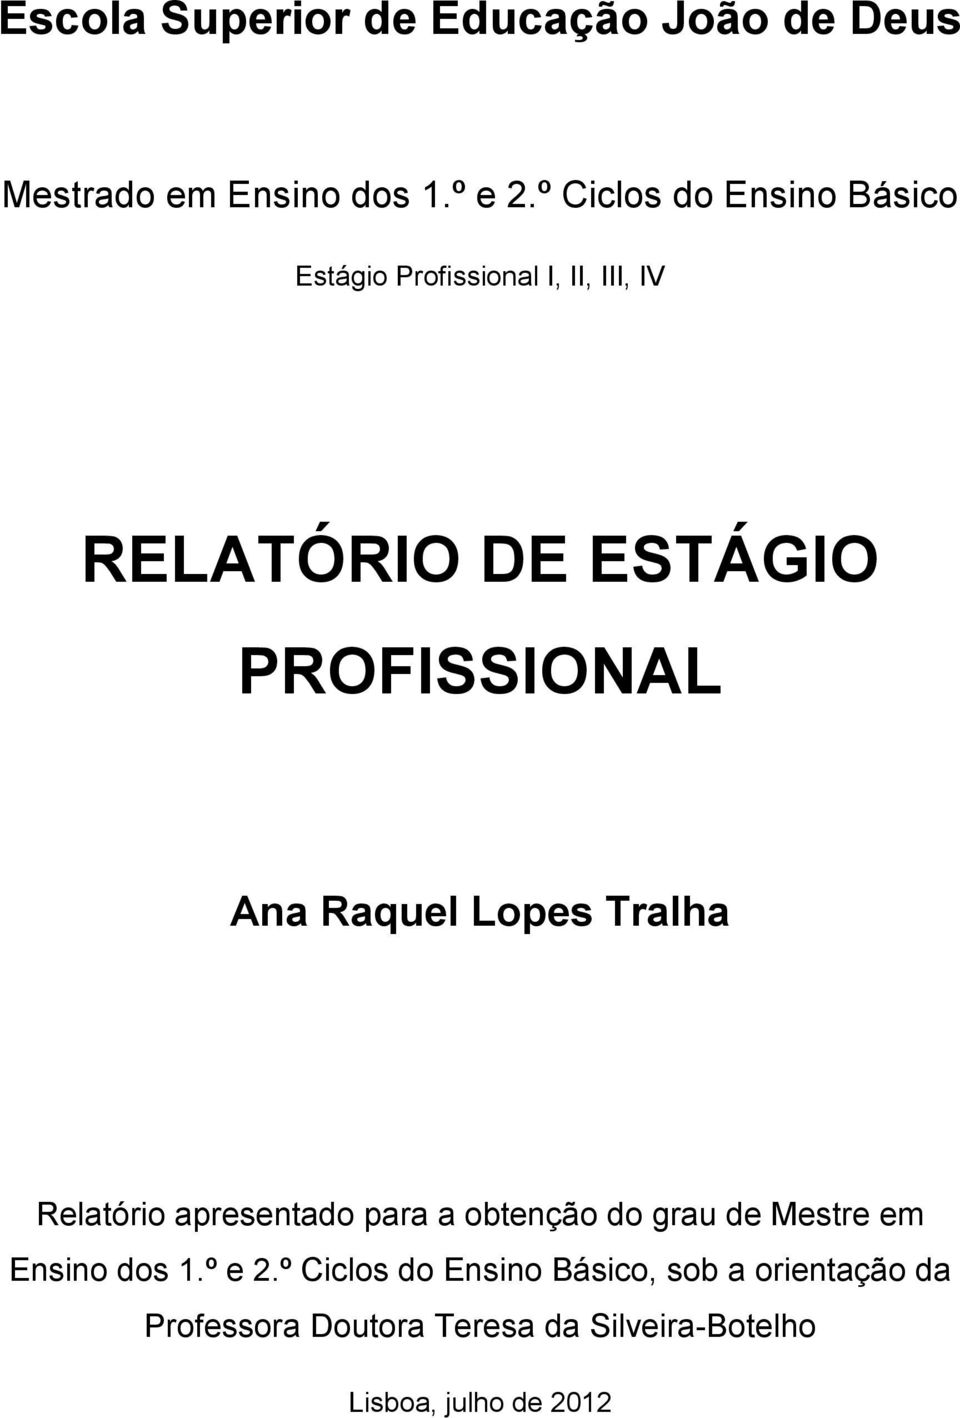 Ana Raquel Lopes Tralha Relatório apresentado para a obtenção do grau de Mestre em Ensino dos 1.